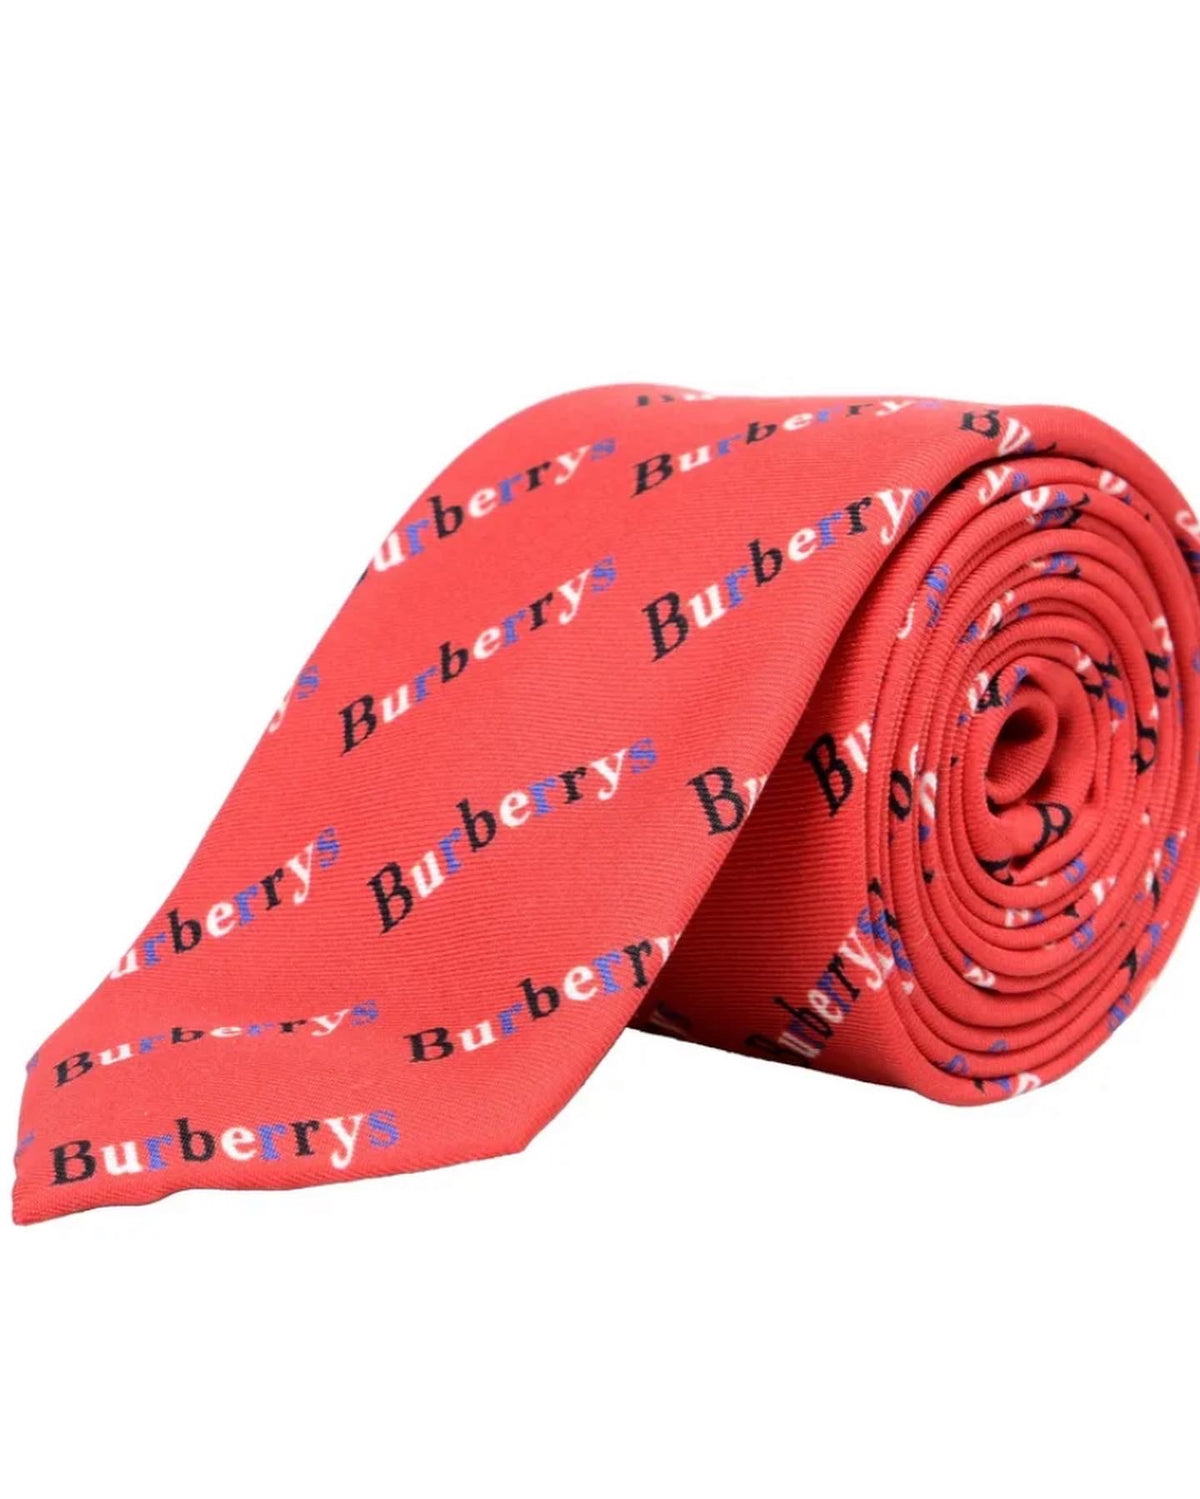 New Burberry Necktie